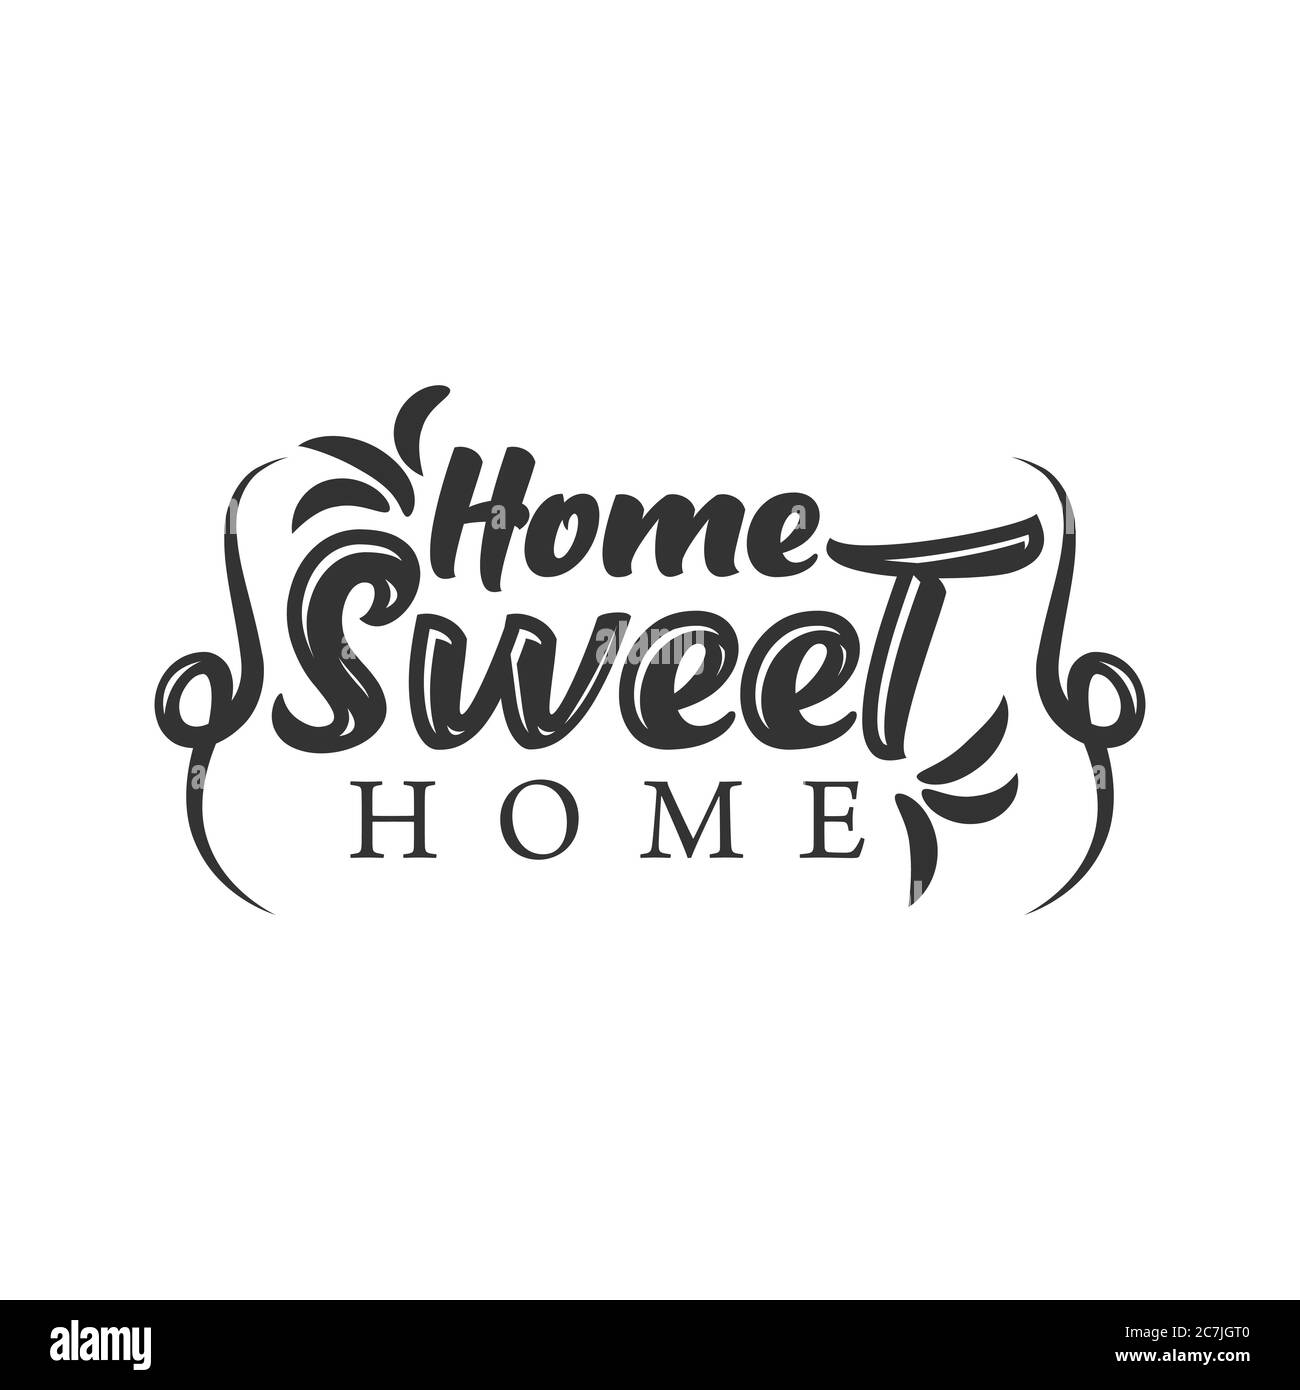 Accueil Sweet Home - Affiche De Typographie. Imprimé lettres fait main. Illustration vectorielle vintage avec hotte de maison et coeur charmant et cheminée d'encens. Illustration de Vecteur